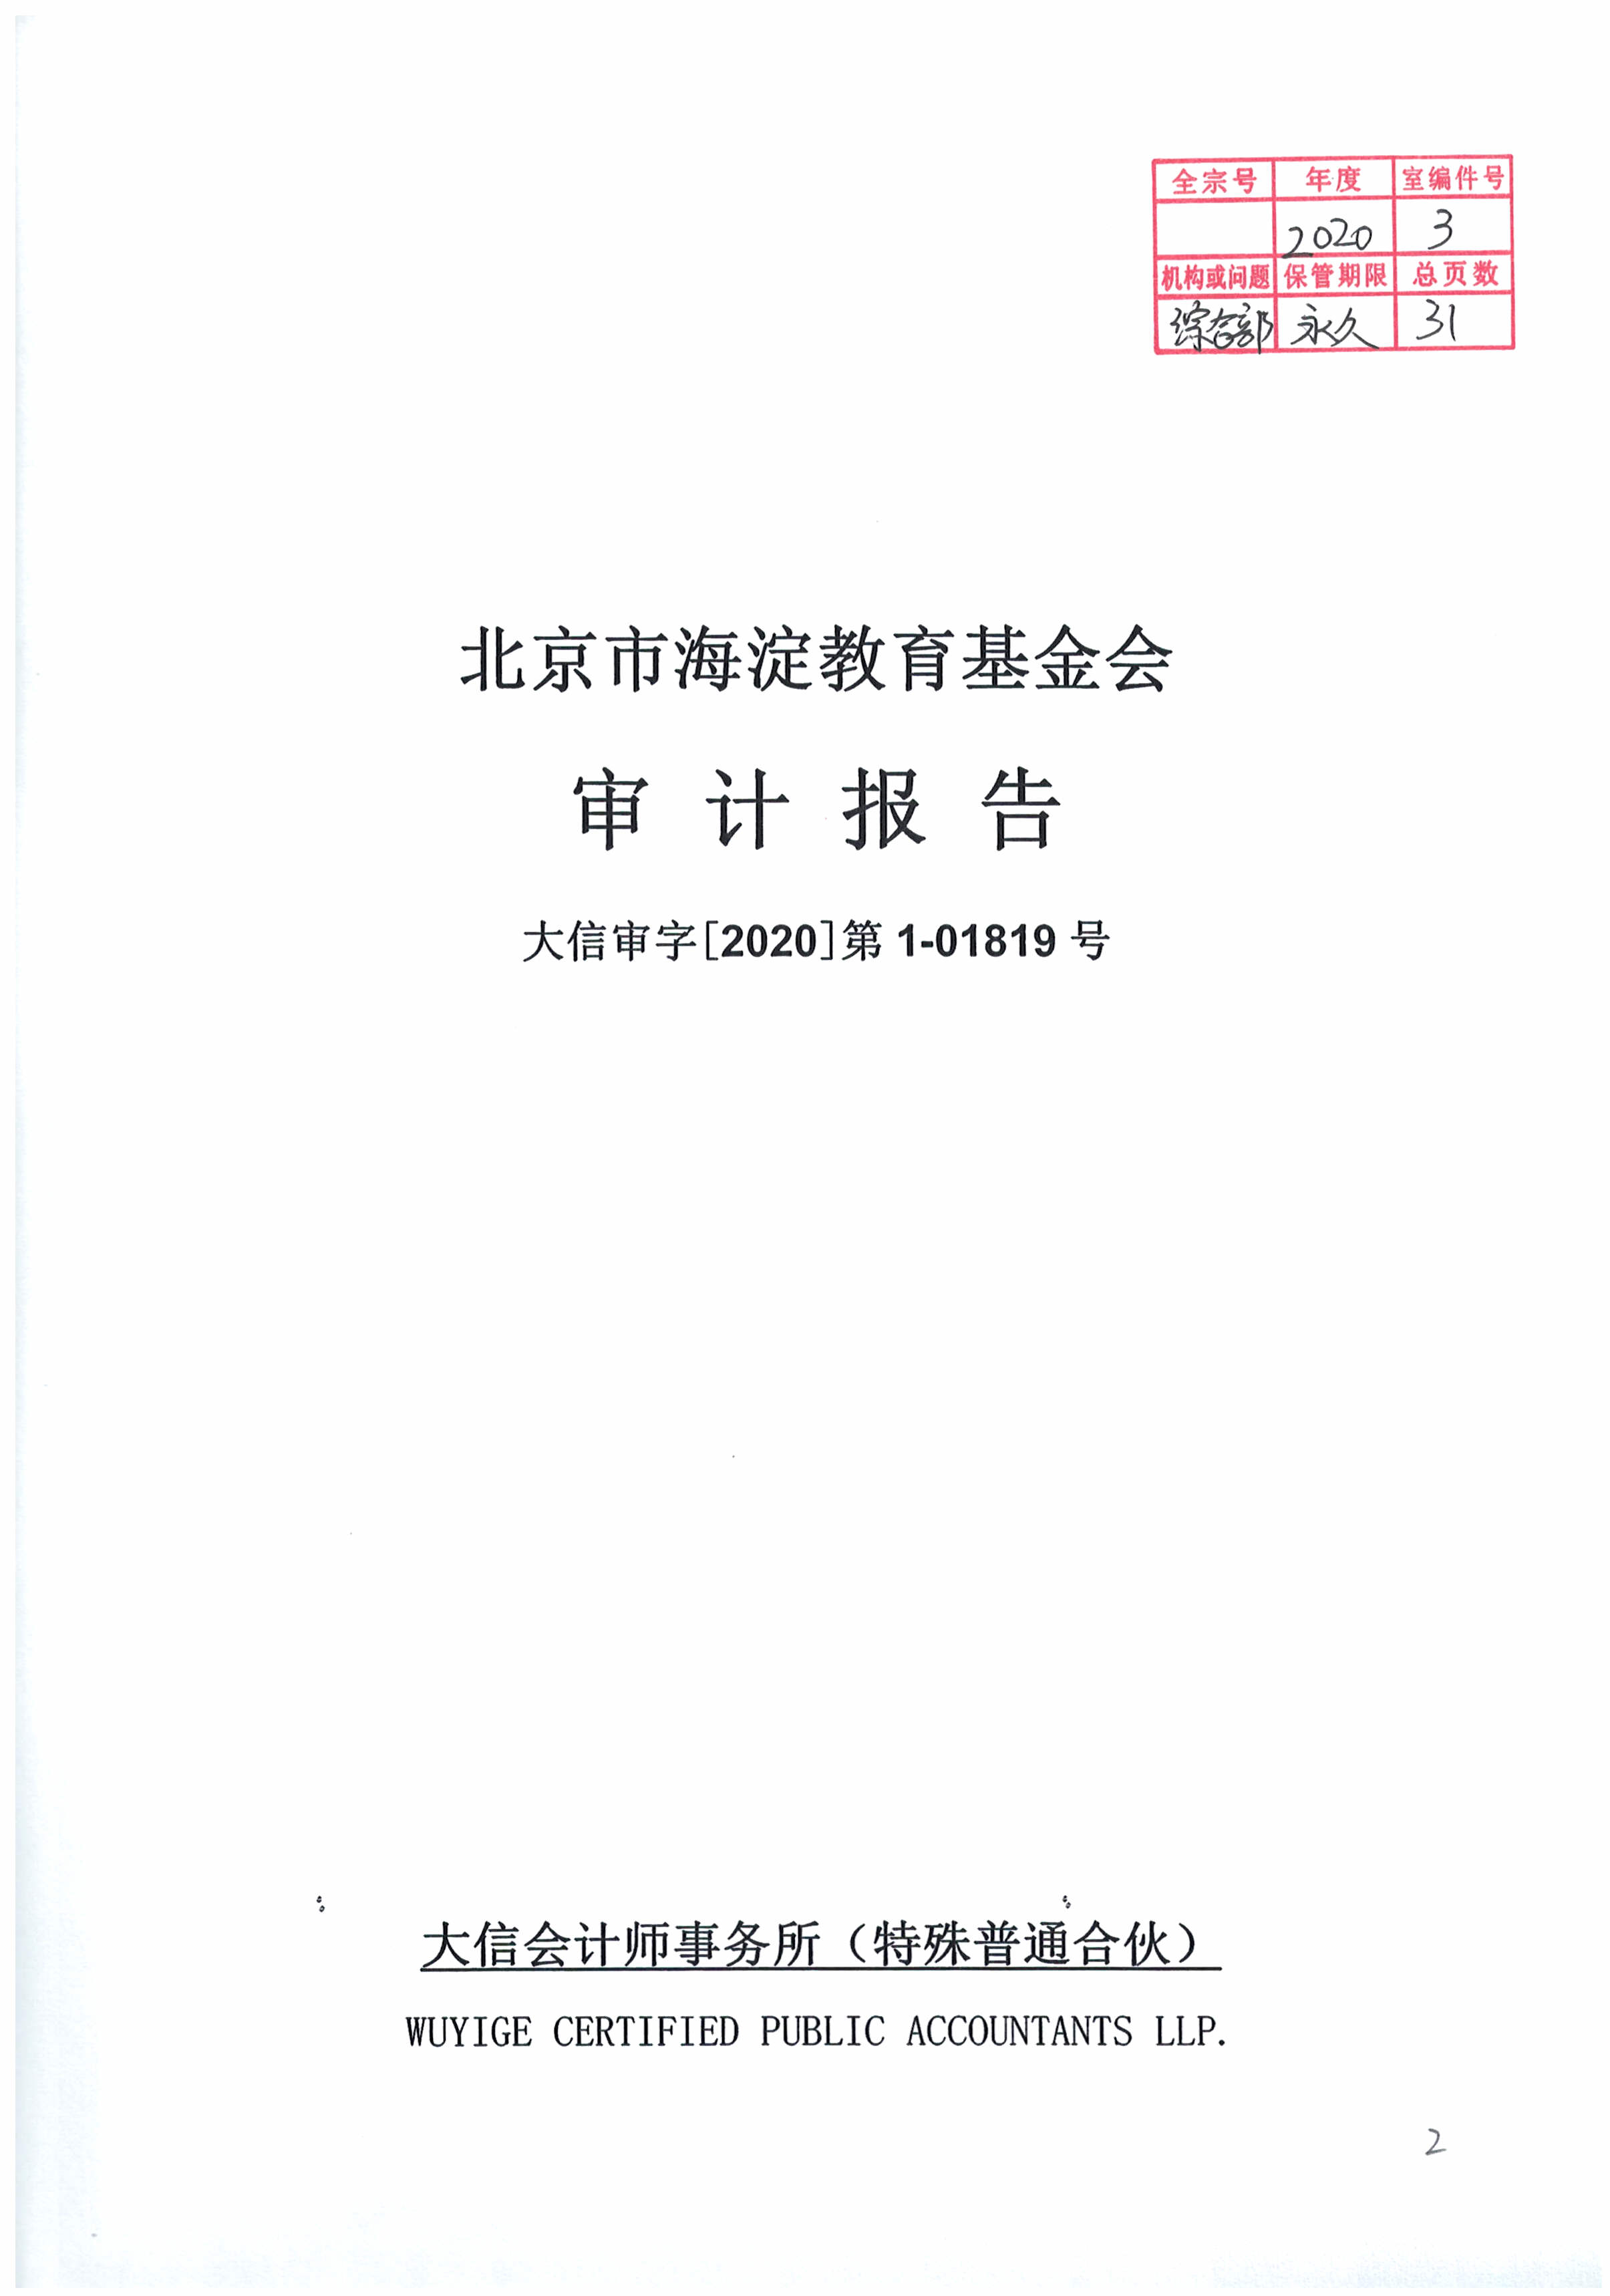 北京市海淀教育基金会2019年审计报告